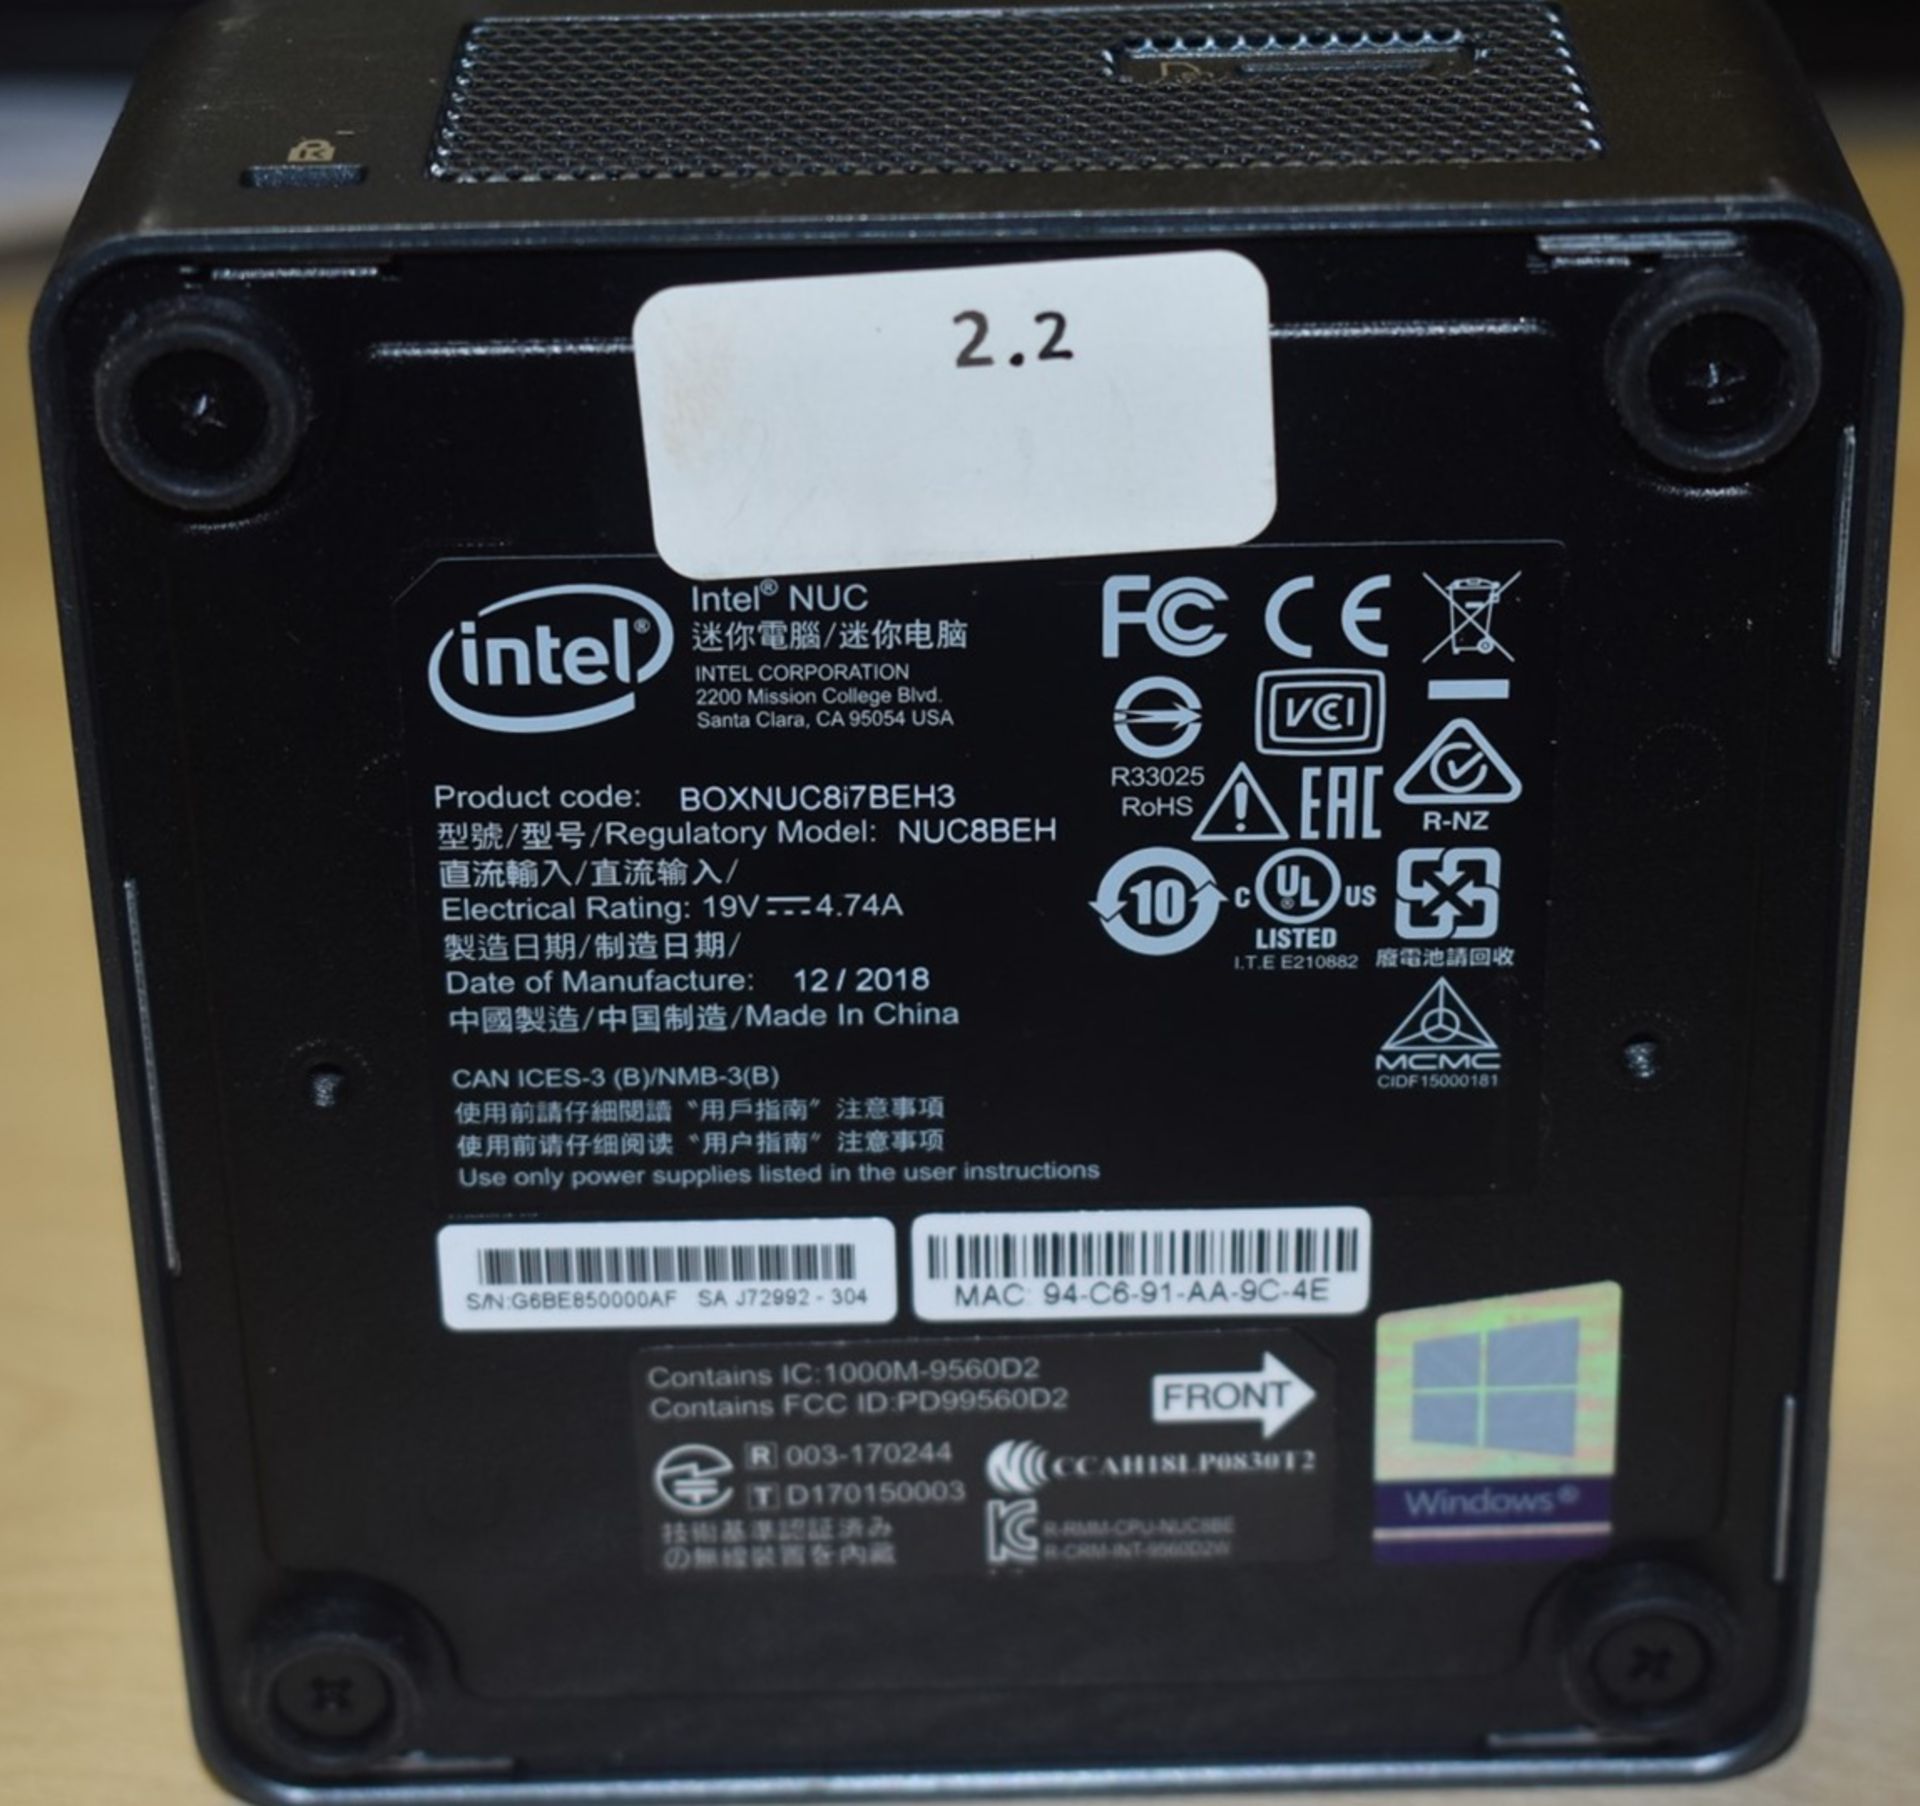 1 x Intel NUC Mini PC Featuring Intel i7-8559u Quad Core 3.7Ghz Processor, 8GB DDR4 2400Mhz Ram, - Image 3 of 5